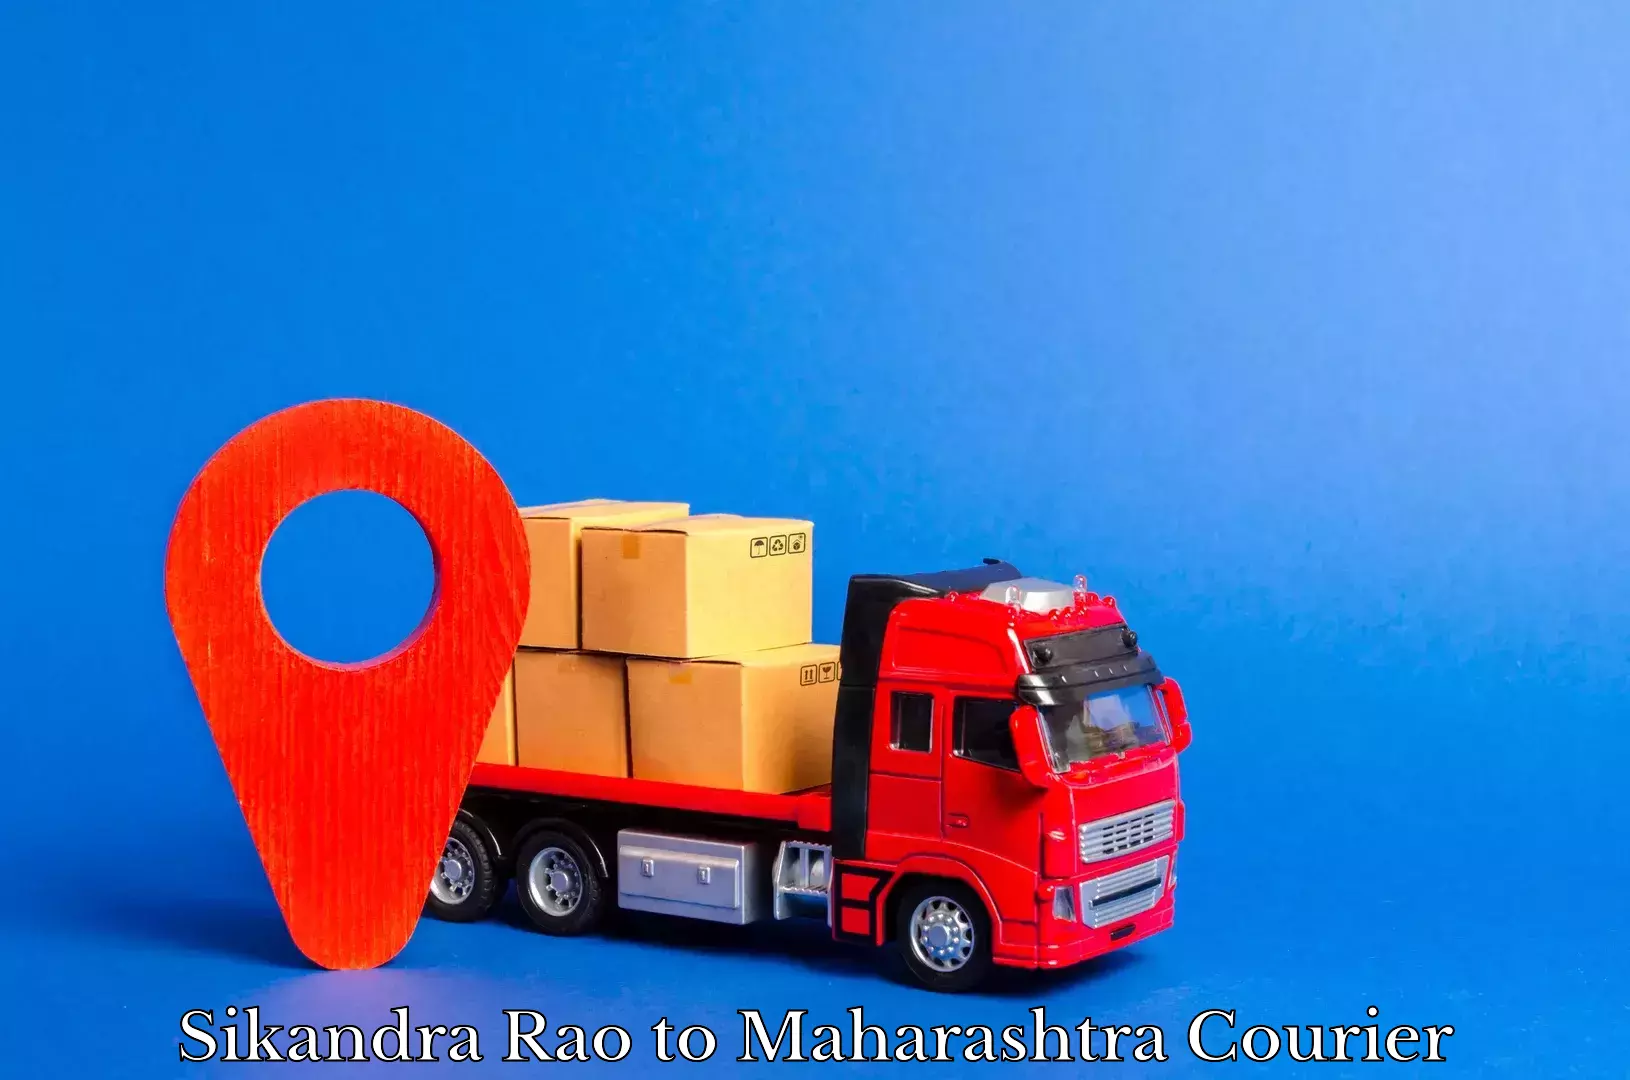 Professional courier services Sikandra Rao to Maharashtra